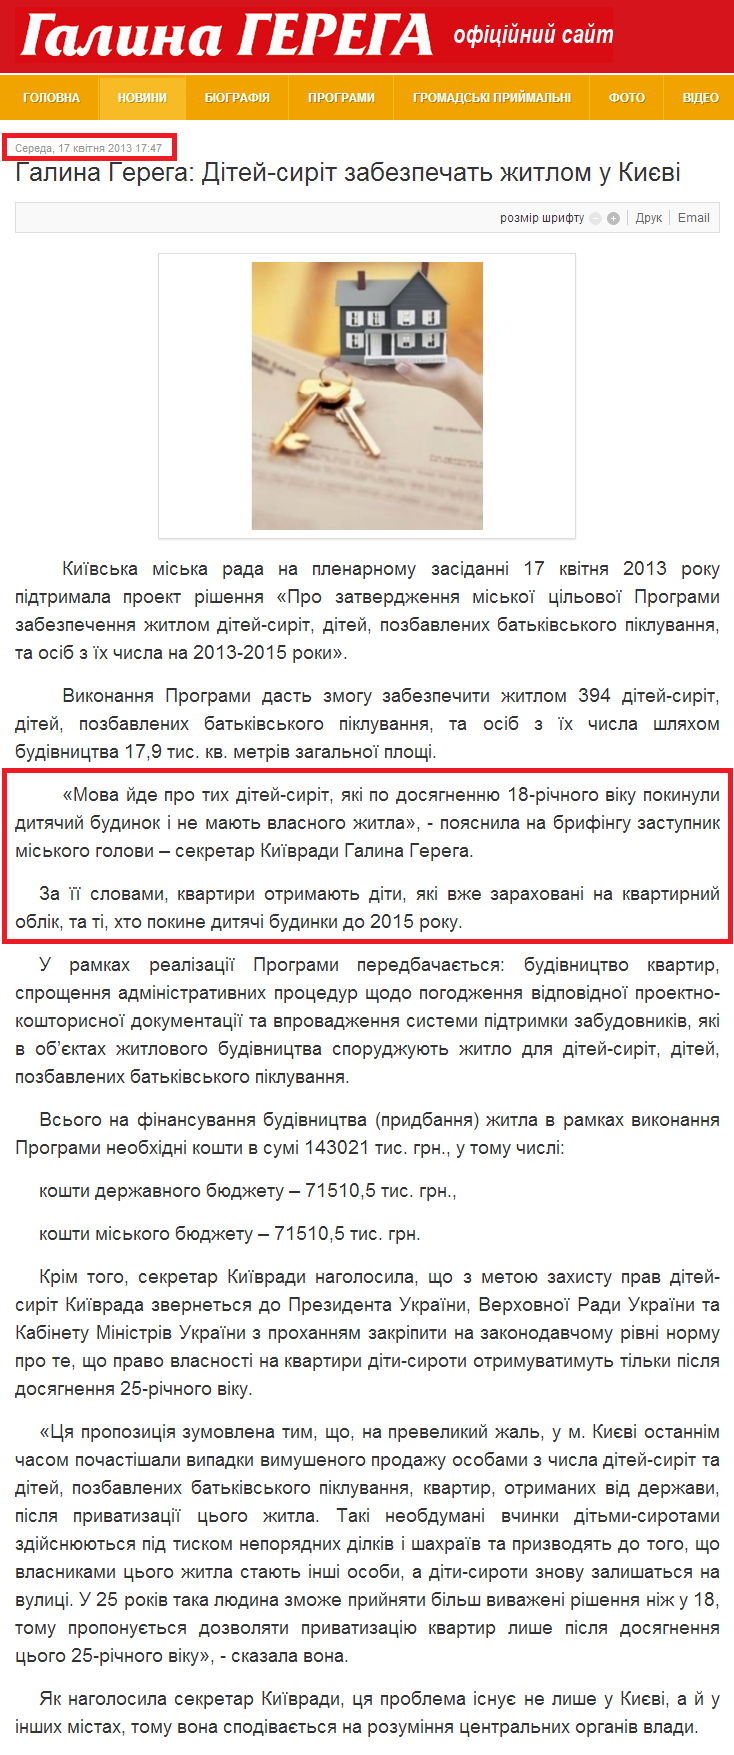 http://gerega.com.ua/novini/item/217-halyna-hereha-ditei-syrit-zabezpechat-zhytlom-u-kyievi.html